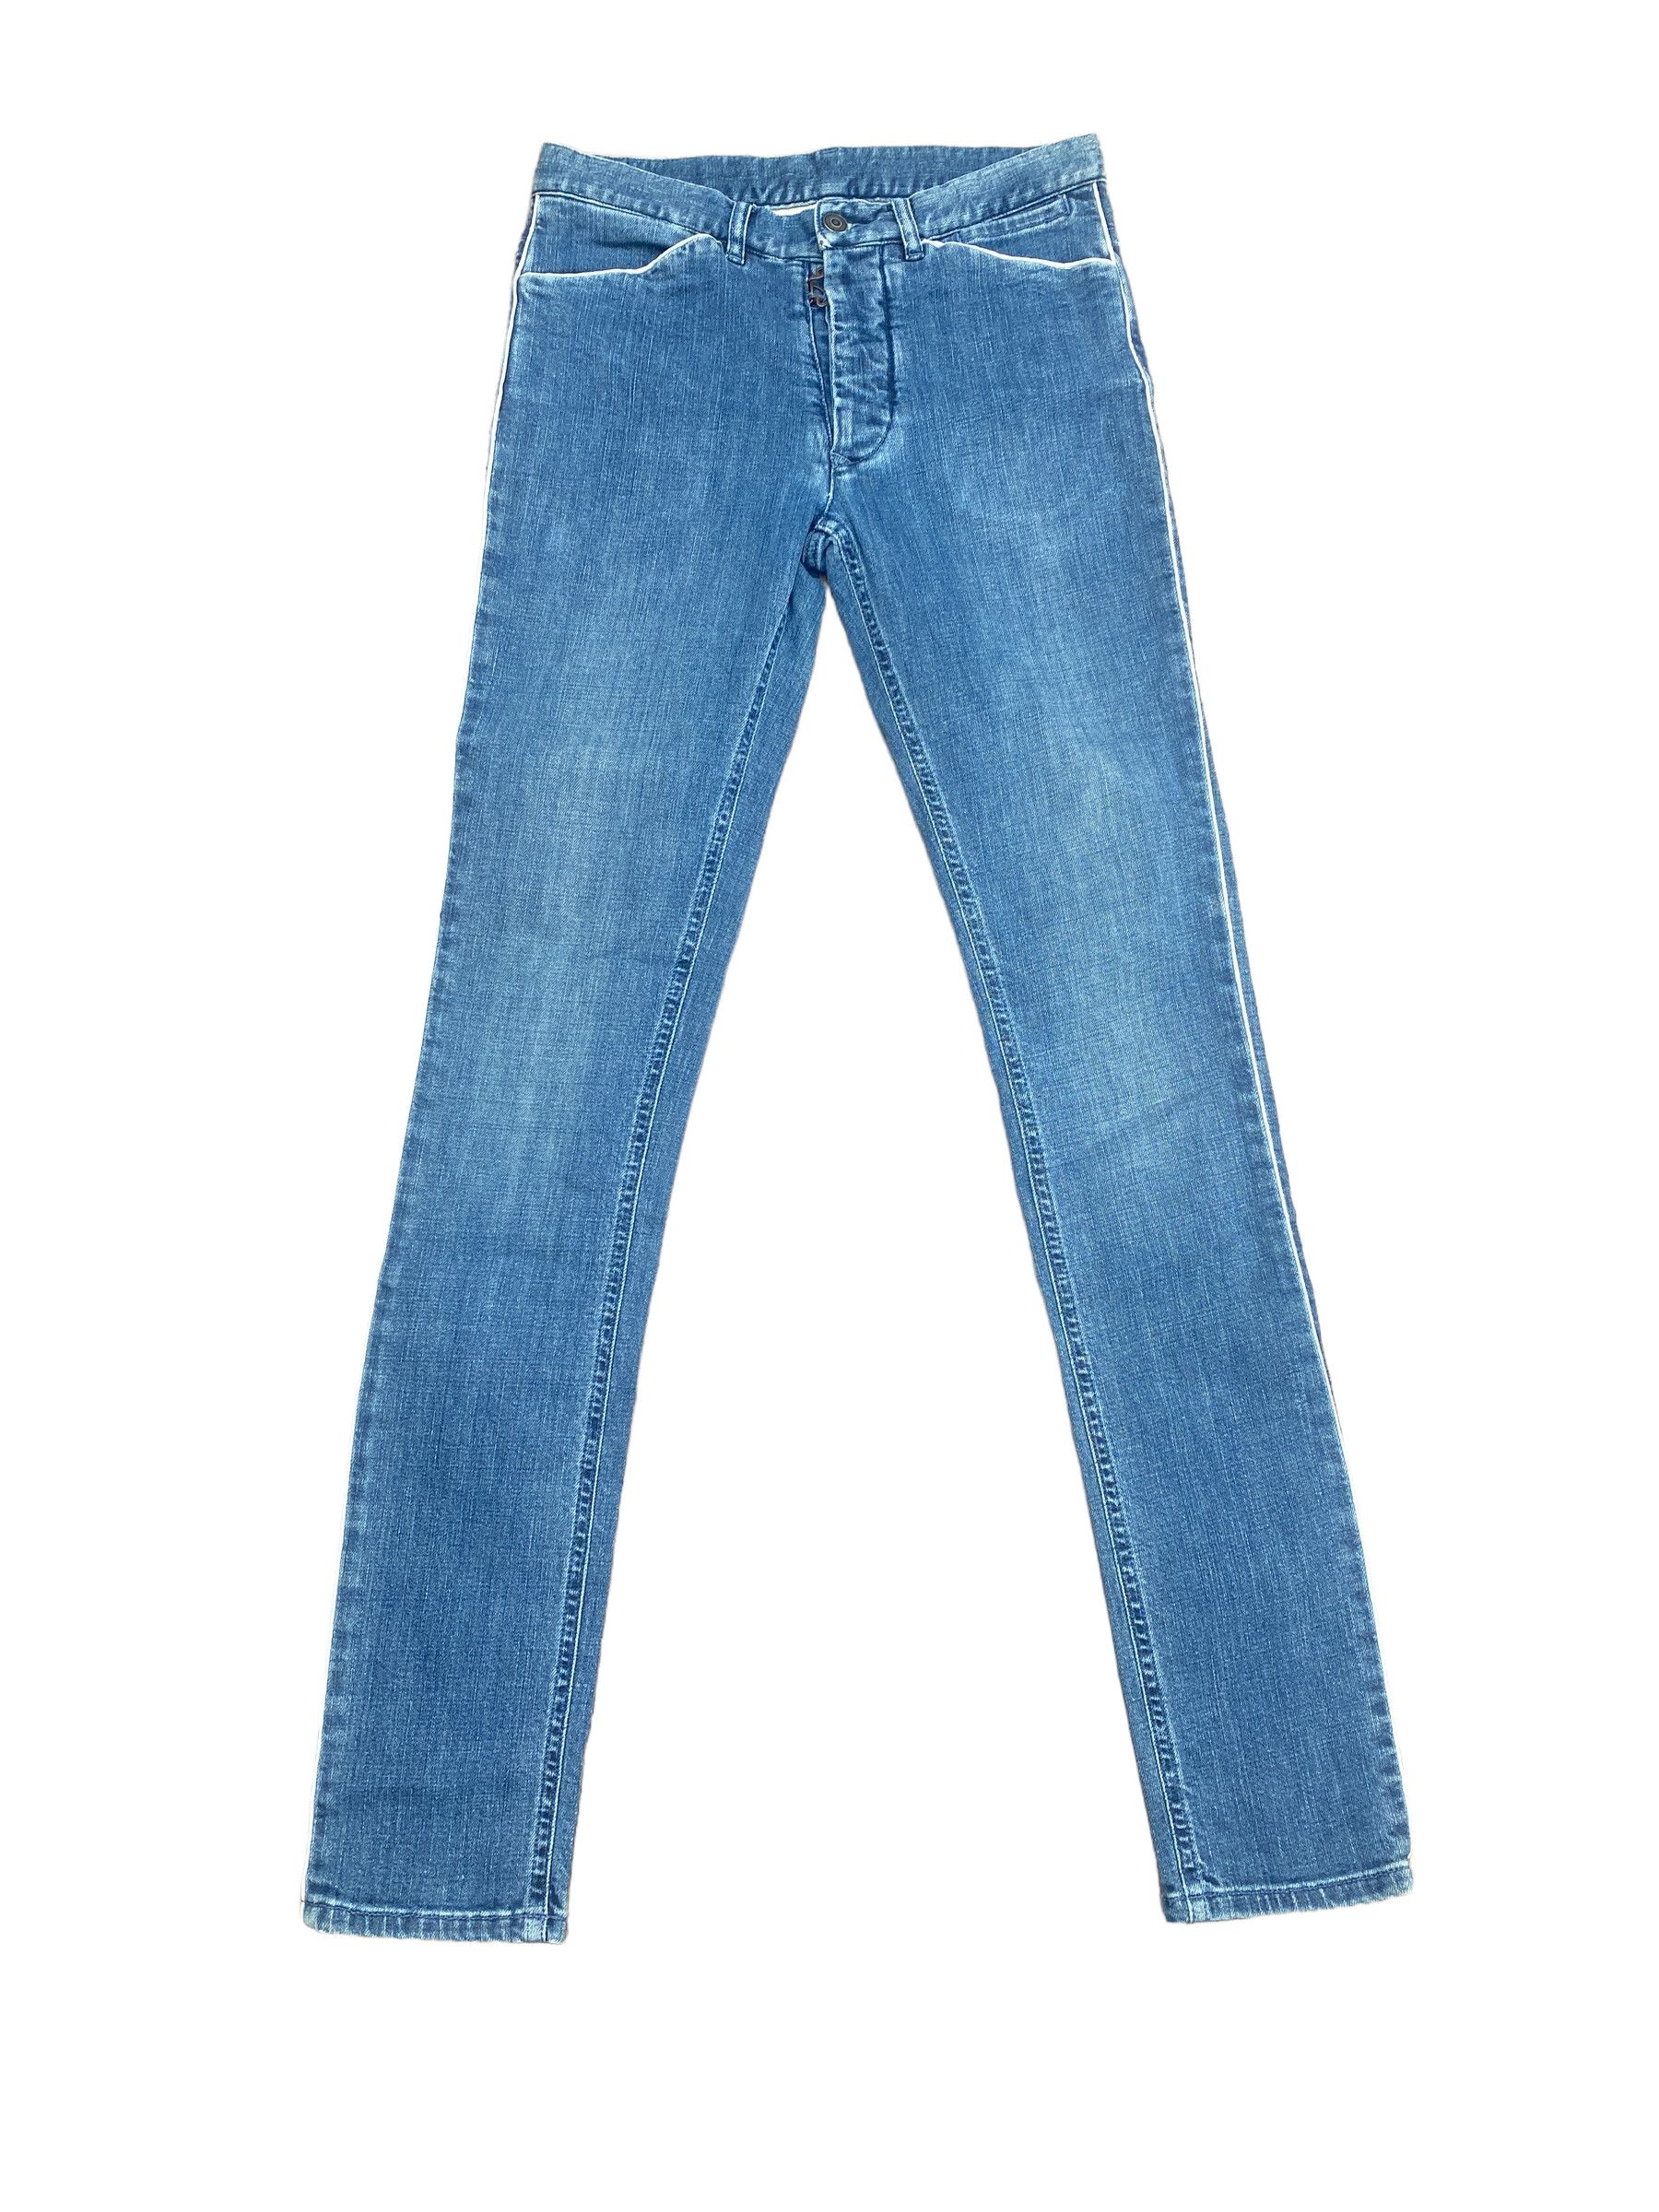 Maison Margiela SS 2008 Light blue denim jeans Size US 28 / EU 44 - 2 Preview